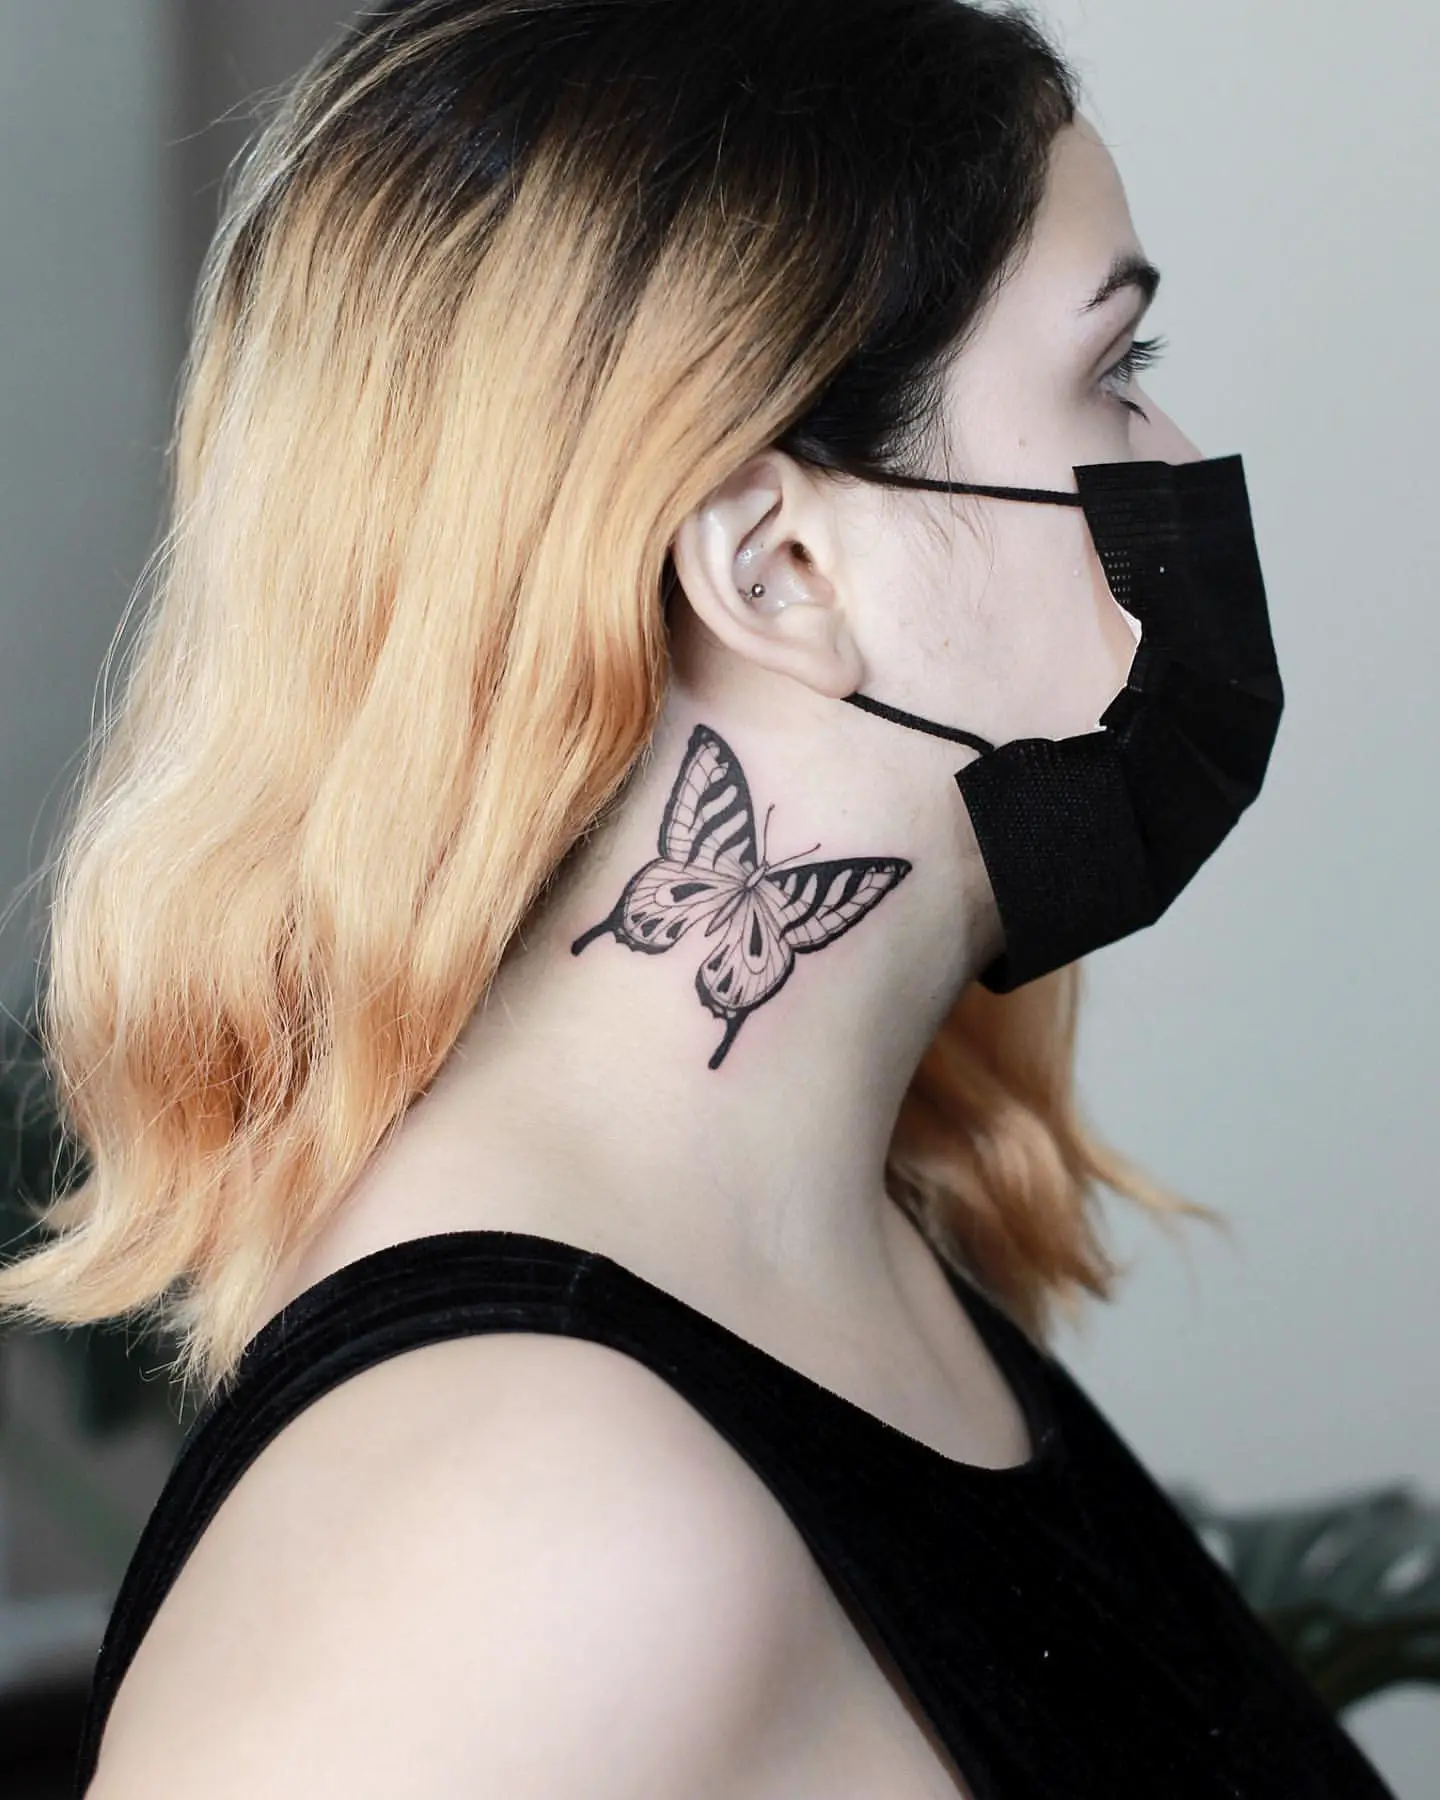 Fineline Blackwork Butterfly Tattoo on Woman’s Neck